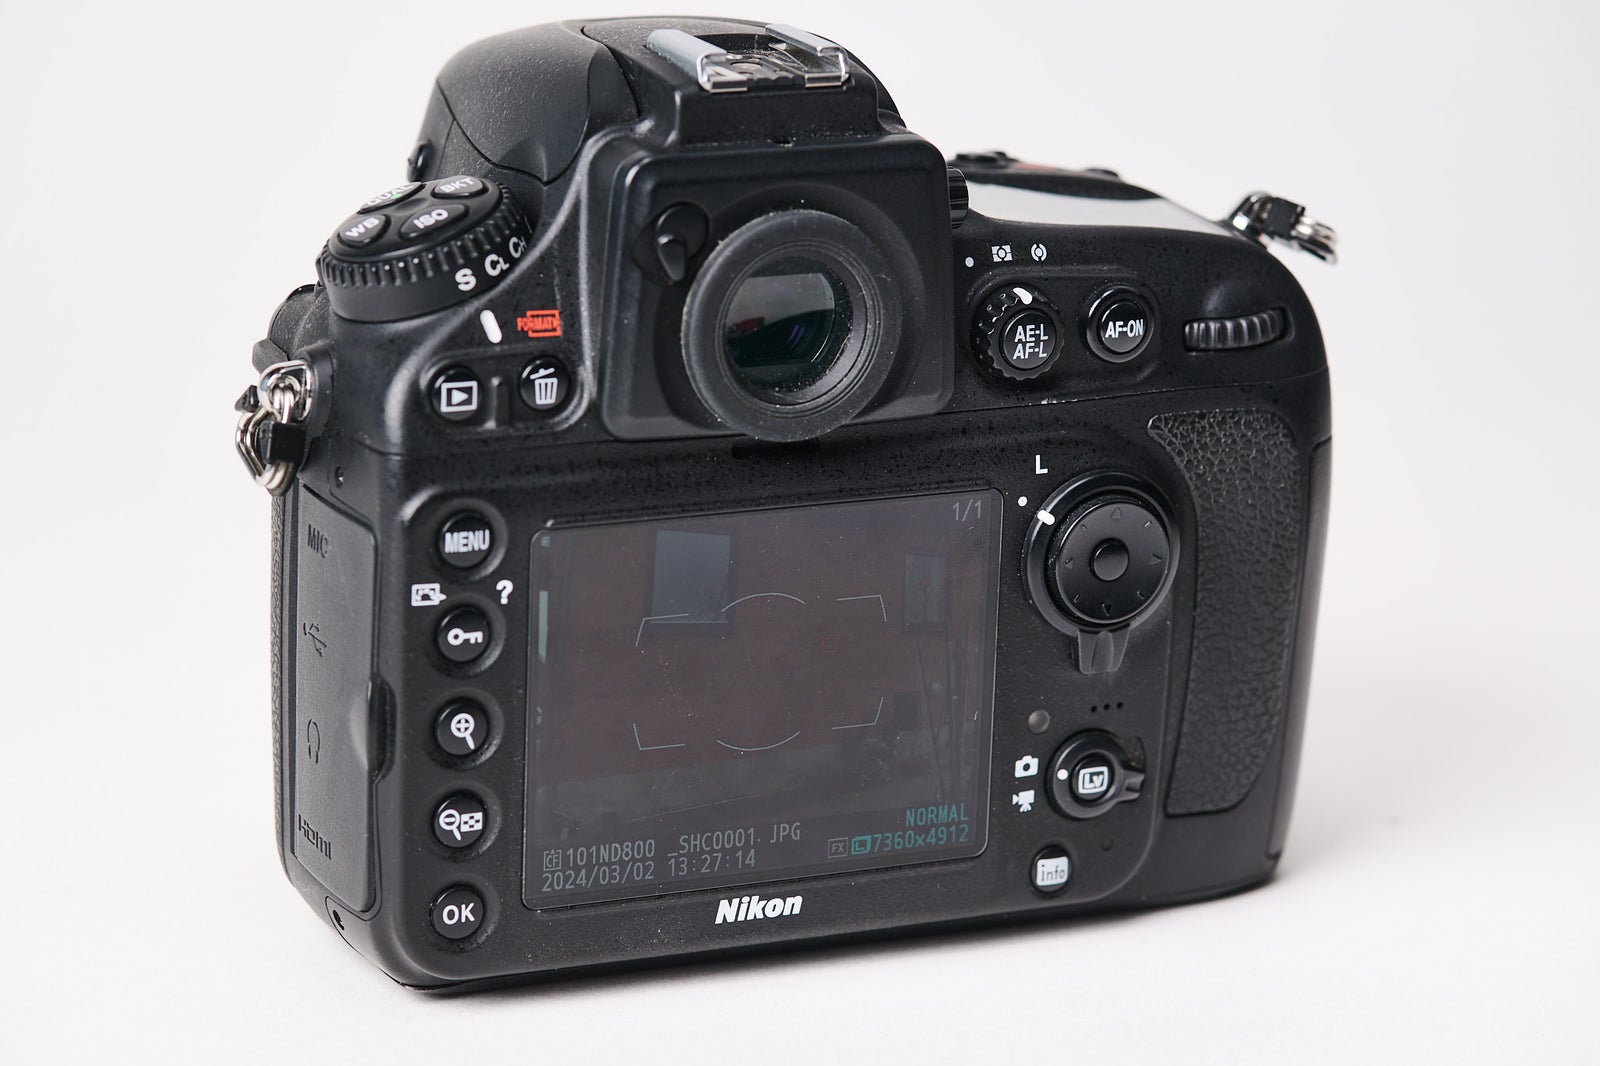 Nikon D 800, spejlrefleks, 36 megapixels